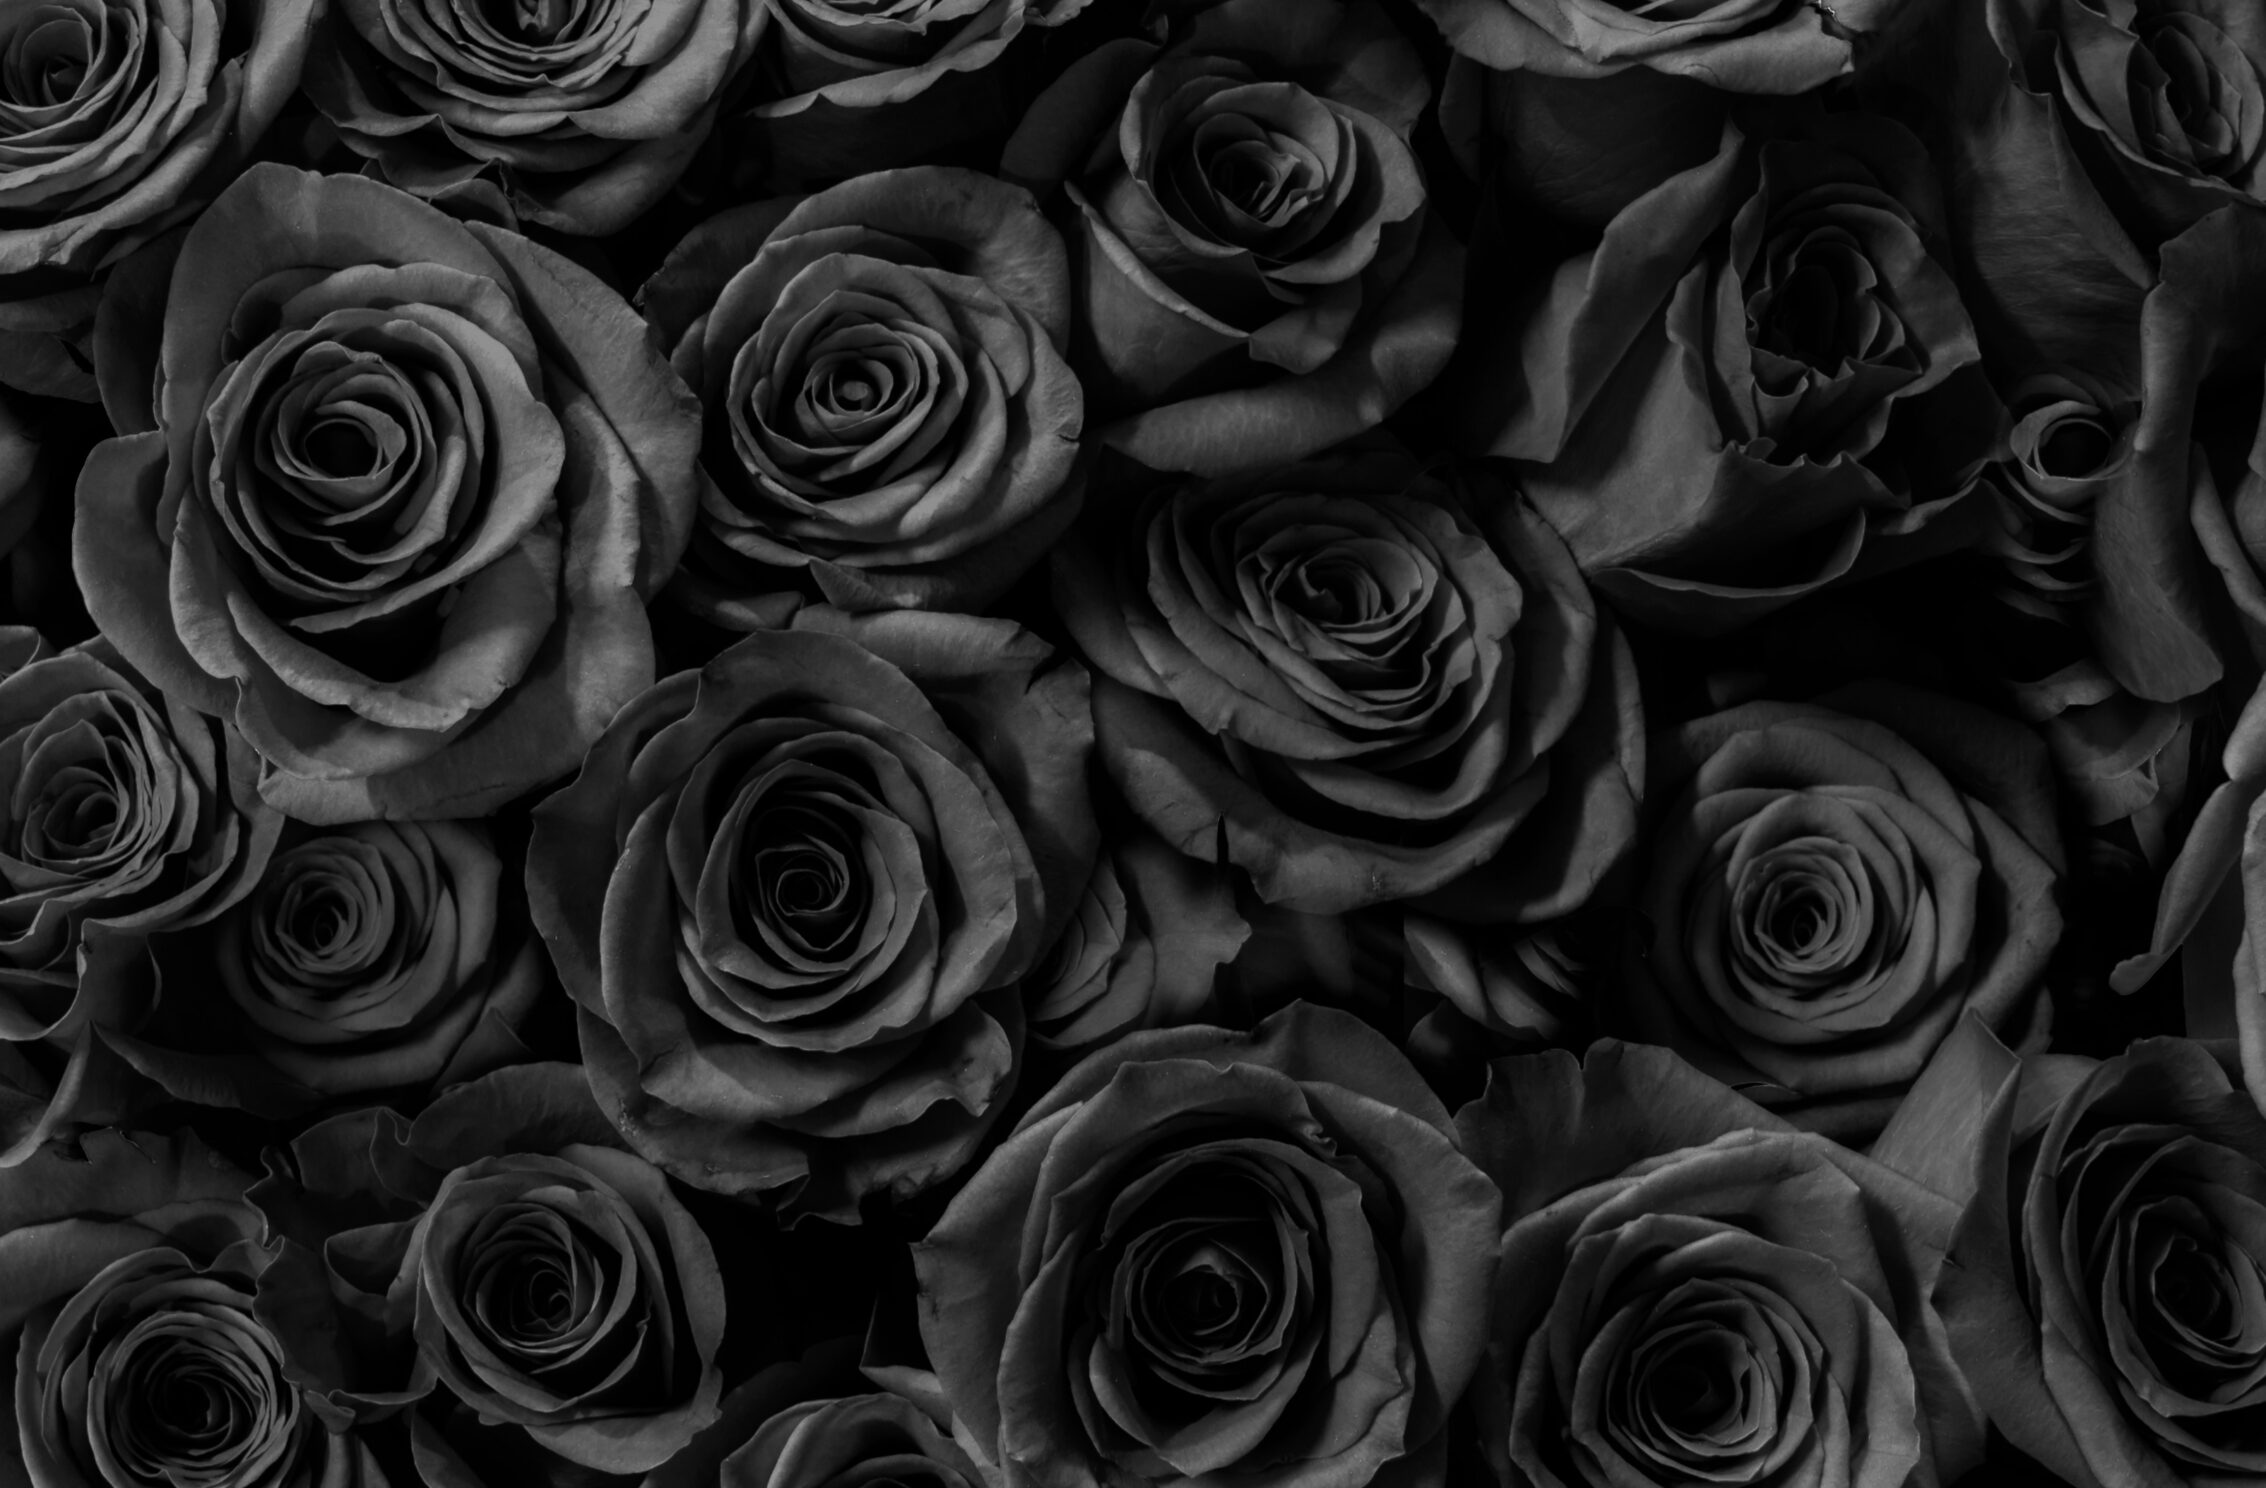 2266x1488 iPad Mini wallpapers Black Roses Gift Anniversary iPad Wallpaper 2266x1488 pixels resolution